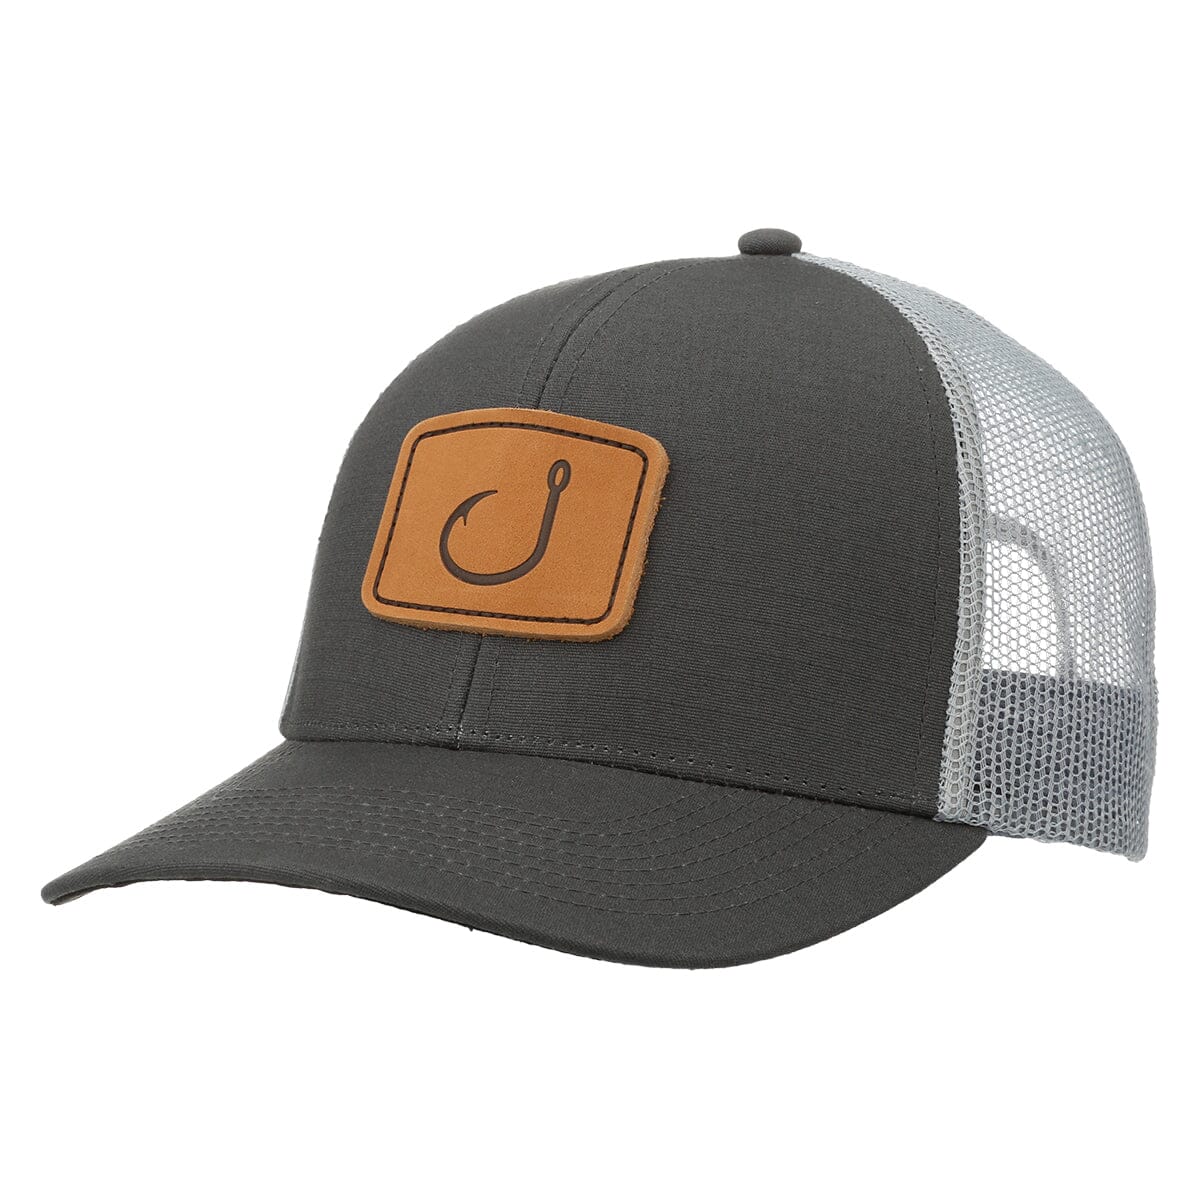 PayDay Trucker Hat - Graphite